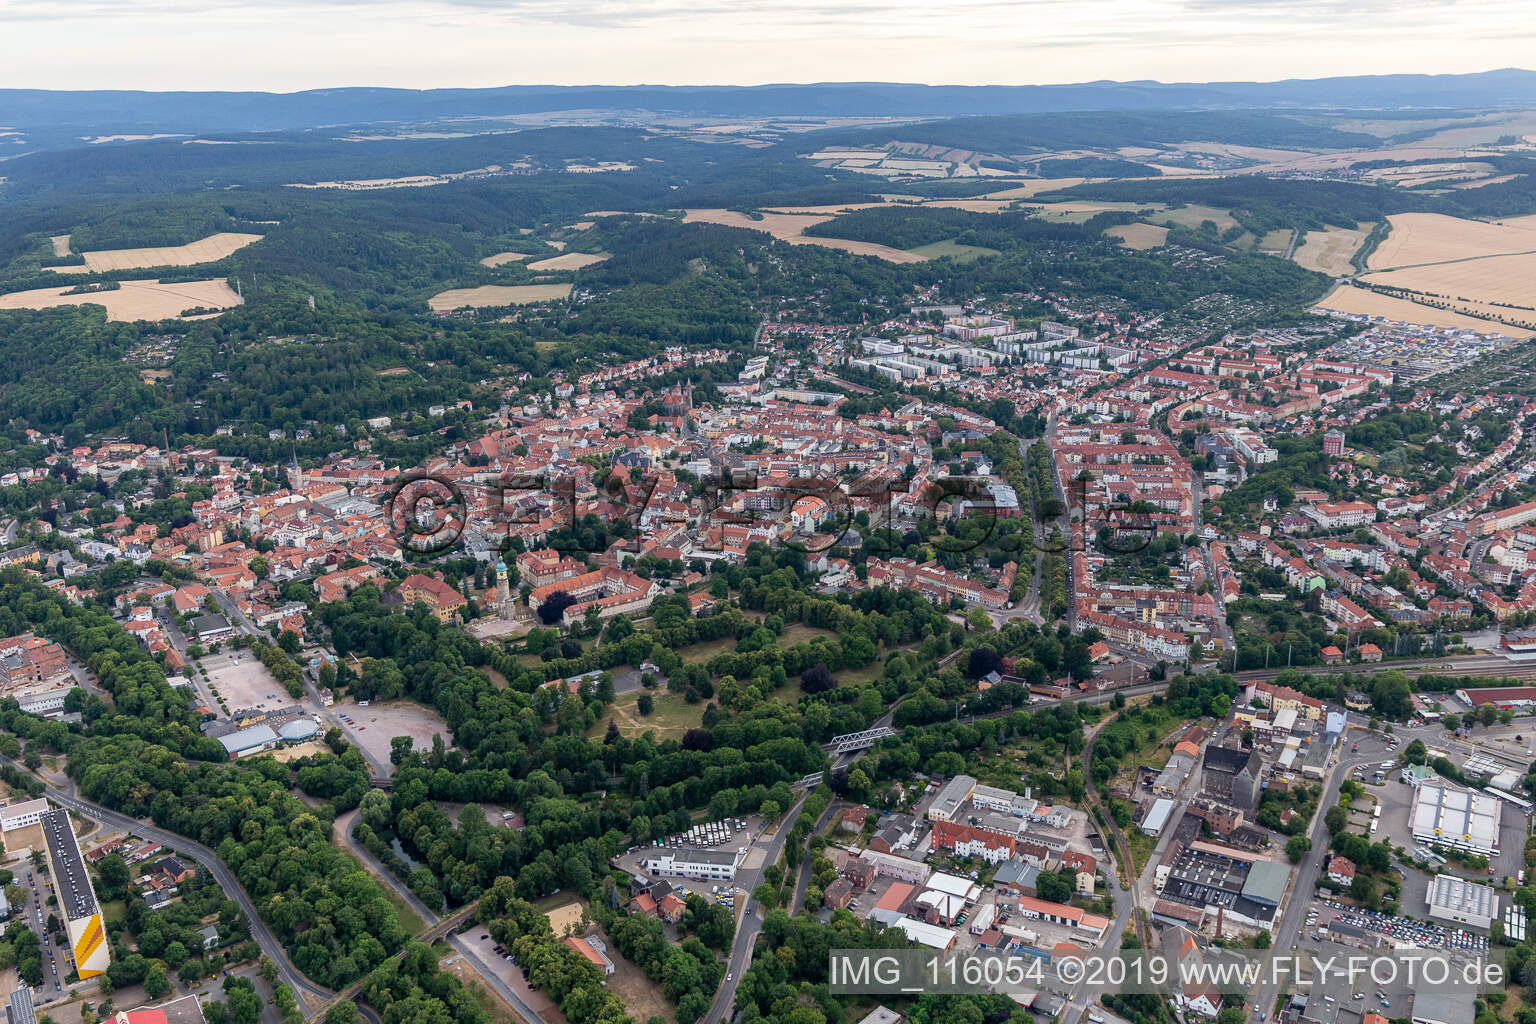 Arnstadt dans le département Thuringe, Allemagne vue d'en haut